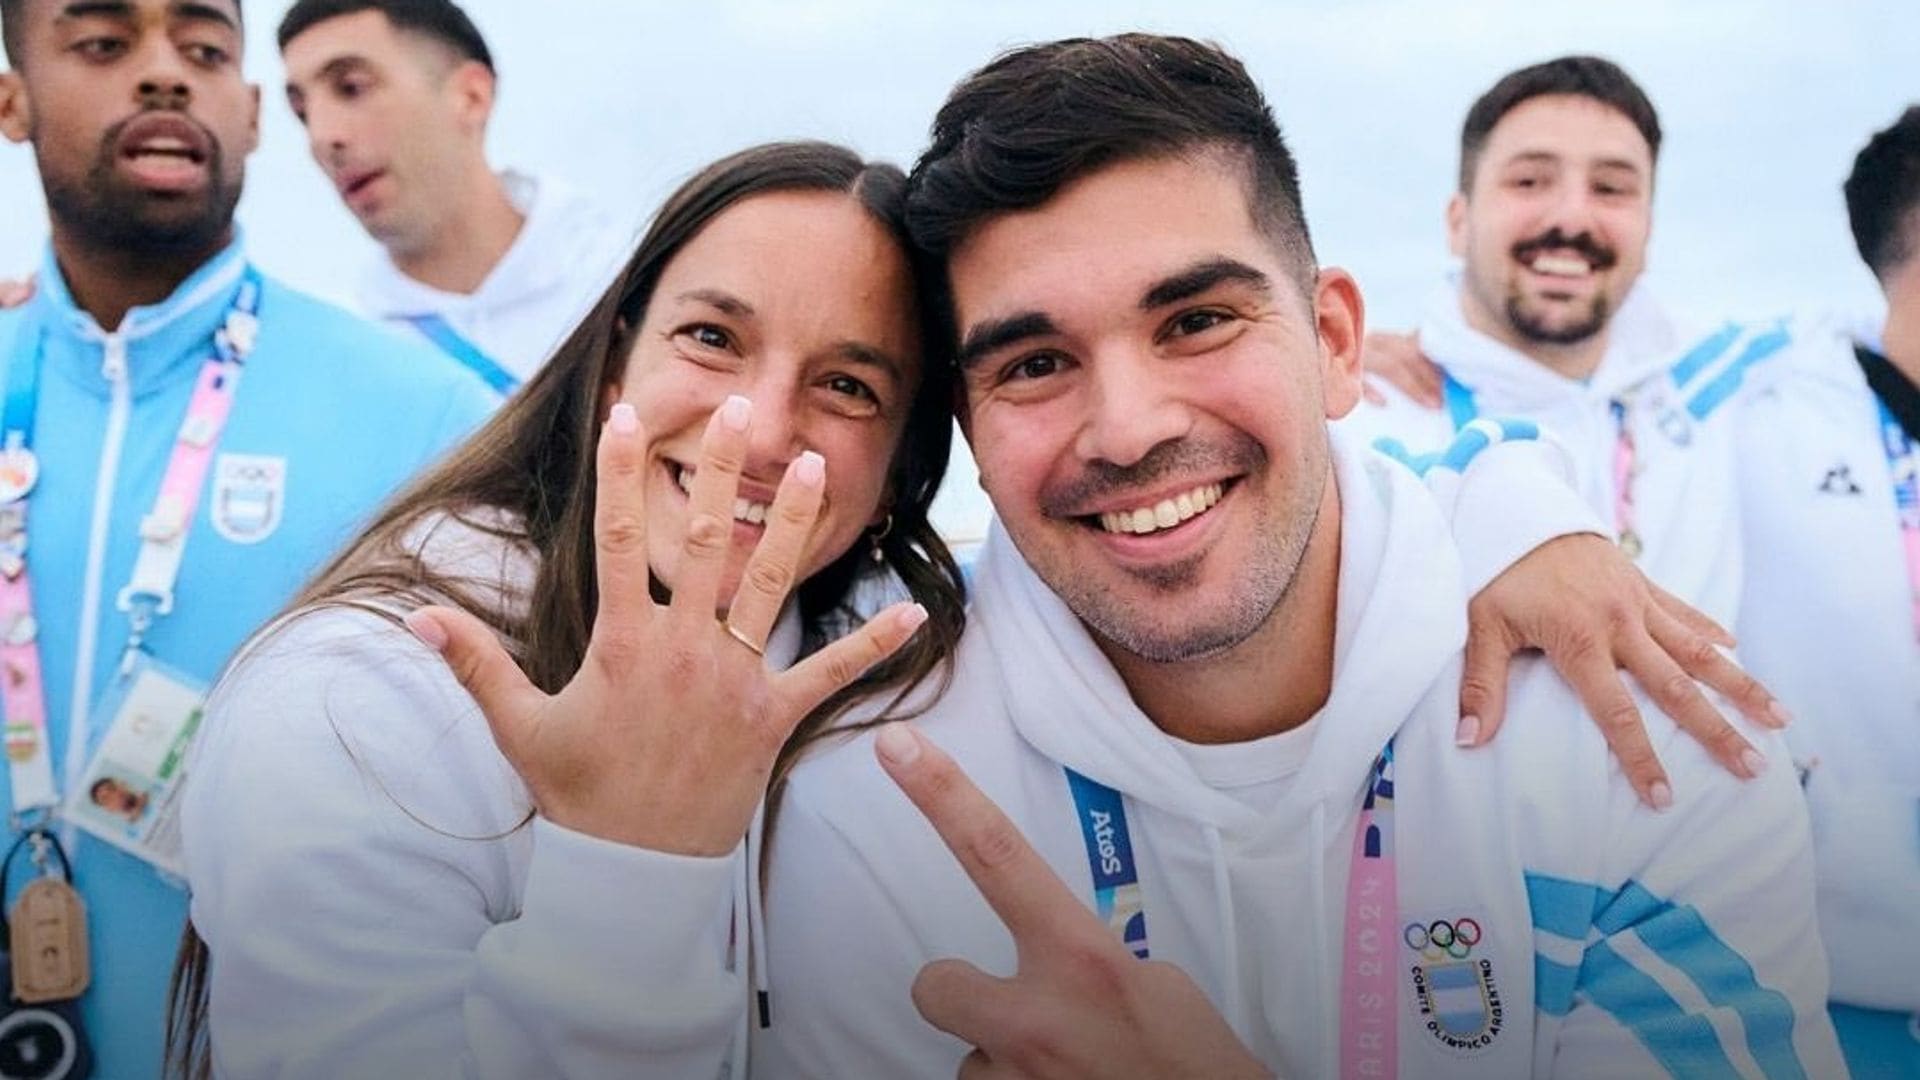 El amor en temporada olímpica: pareja de atletas argentinos se compromete en París 2024